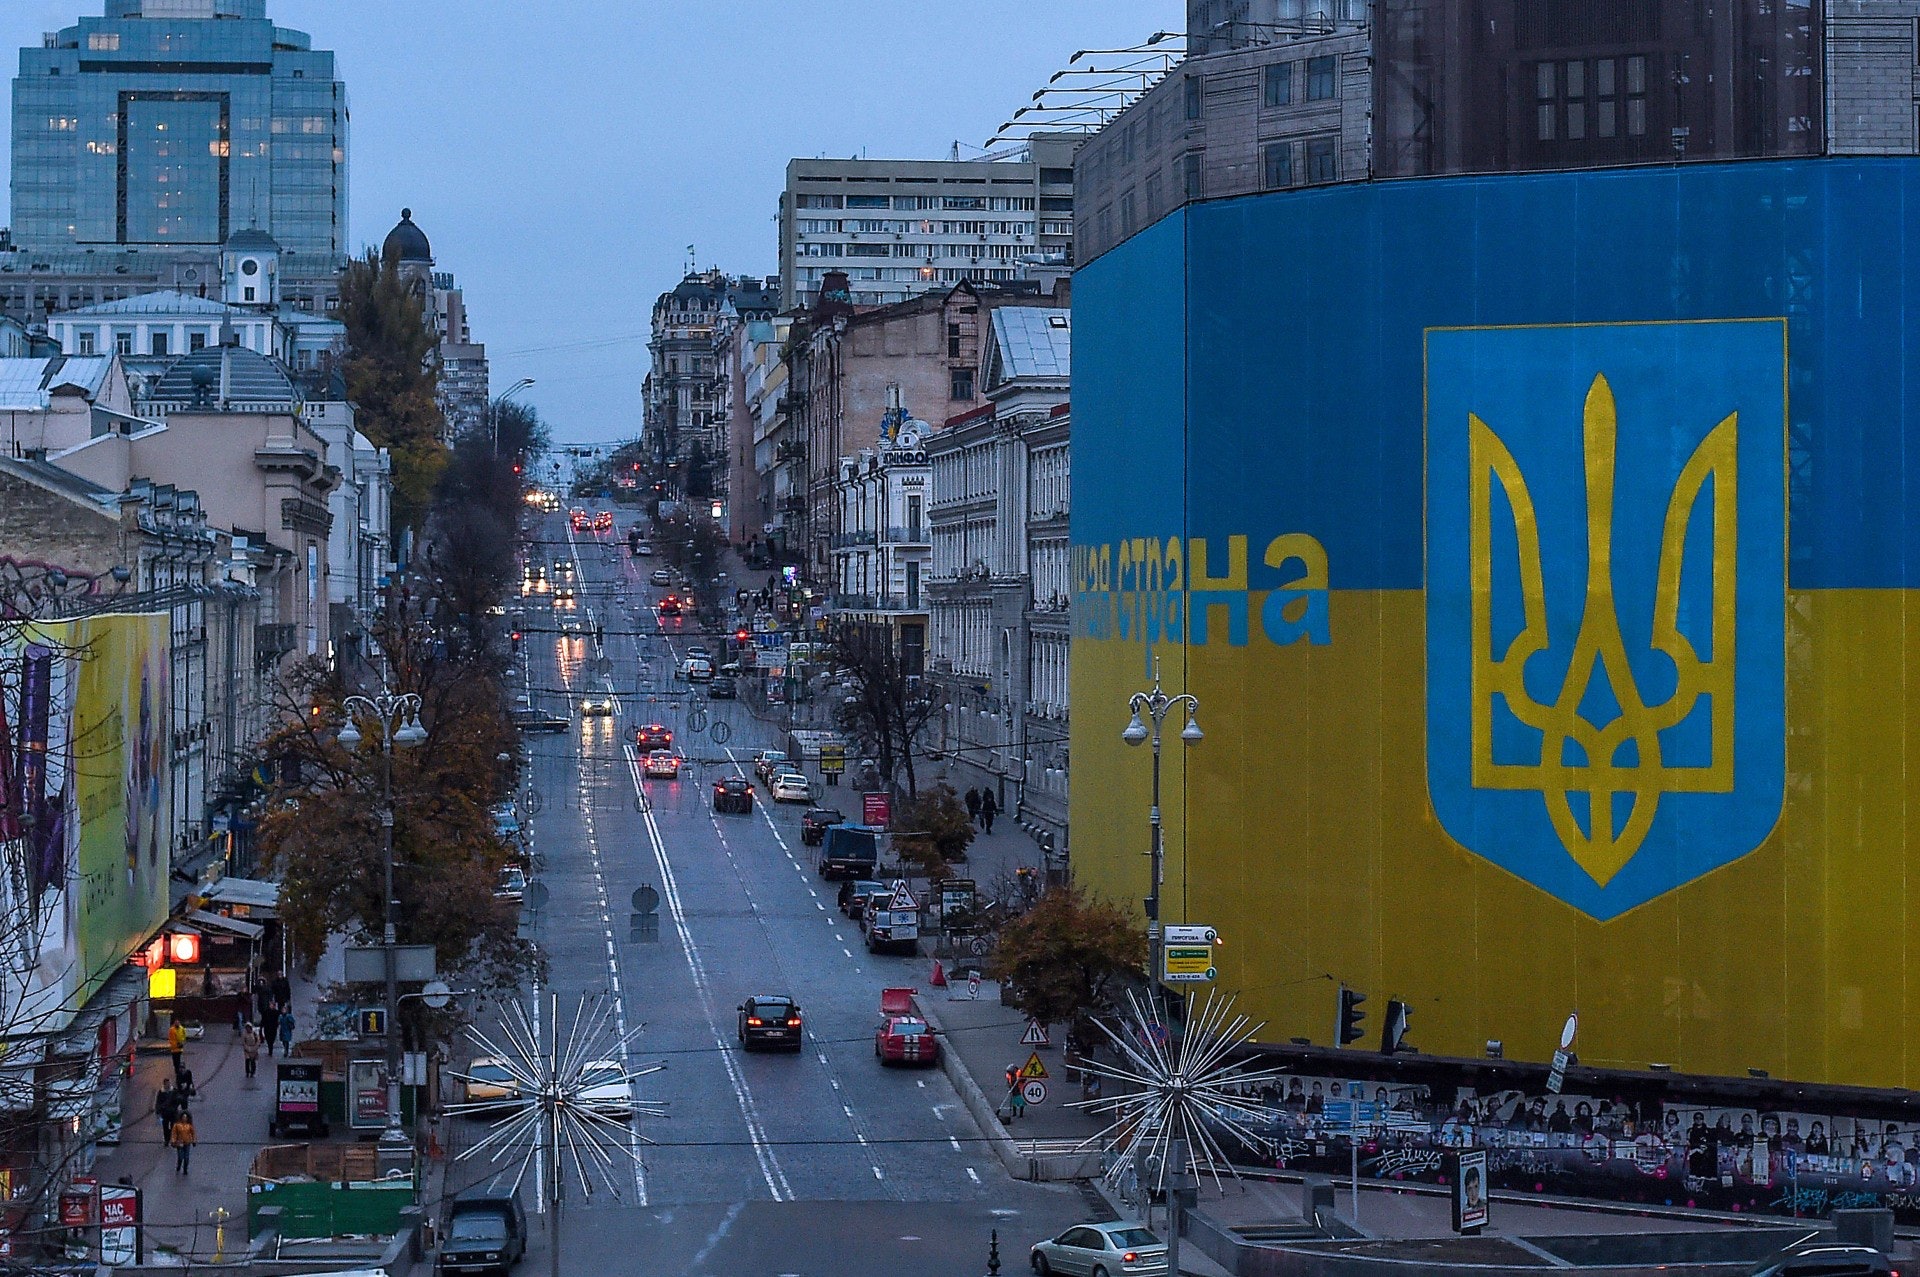 烏克蘭位處歐洲心臟，且資源豐庶，地位無可取替。可是，這十多年來國民不停在政治旋渦中打轉，社會經濟停滯不前。新任總統能否出奇制勝，帶領烏克蘭人走上正軌？（Getty Images）